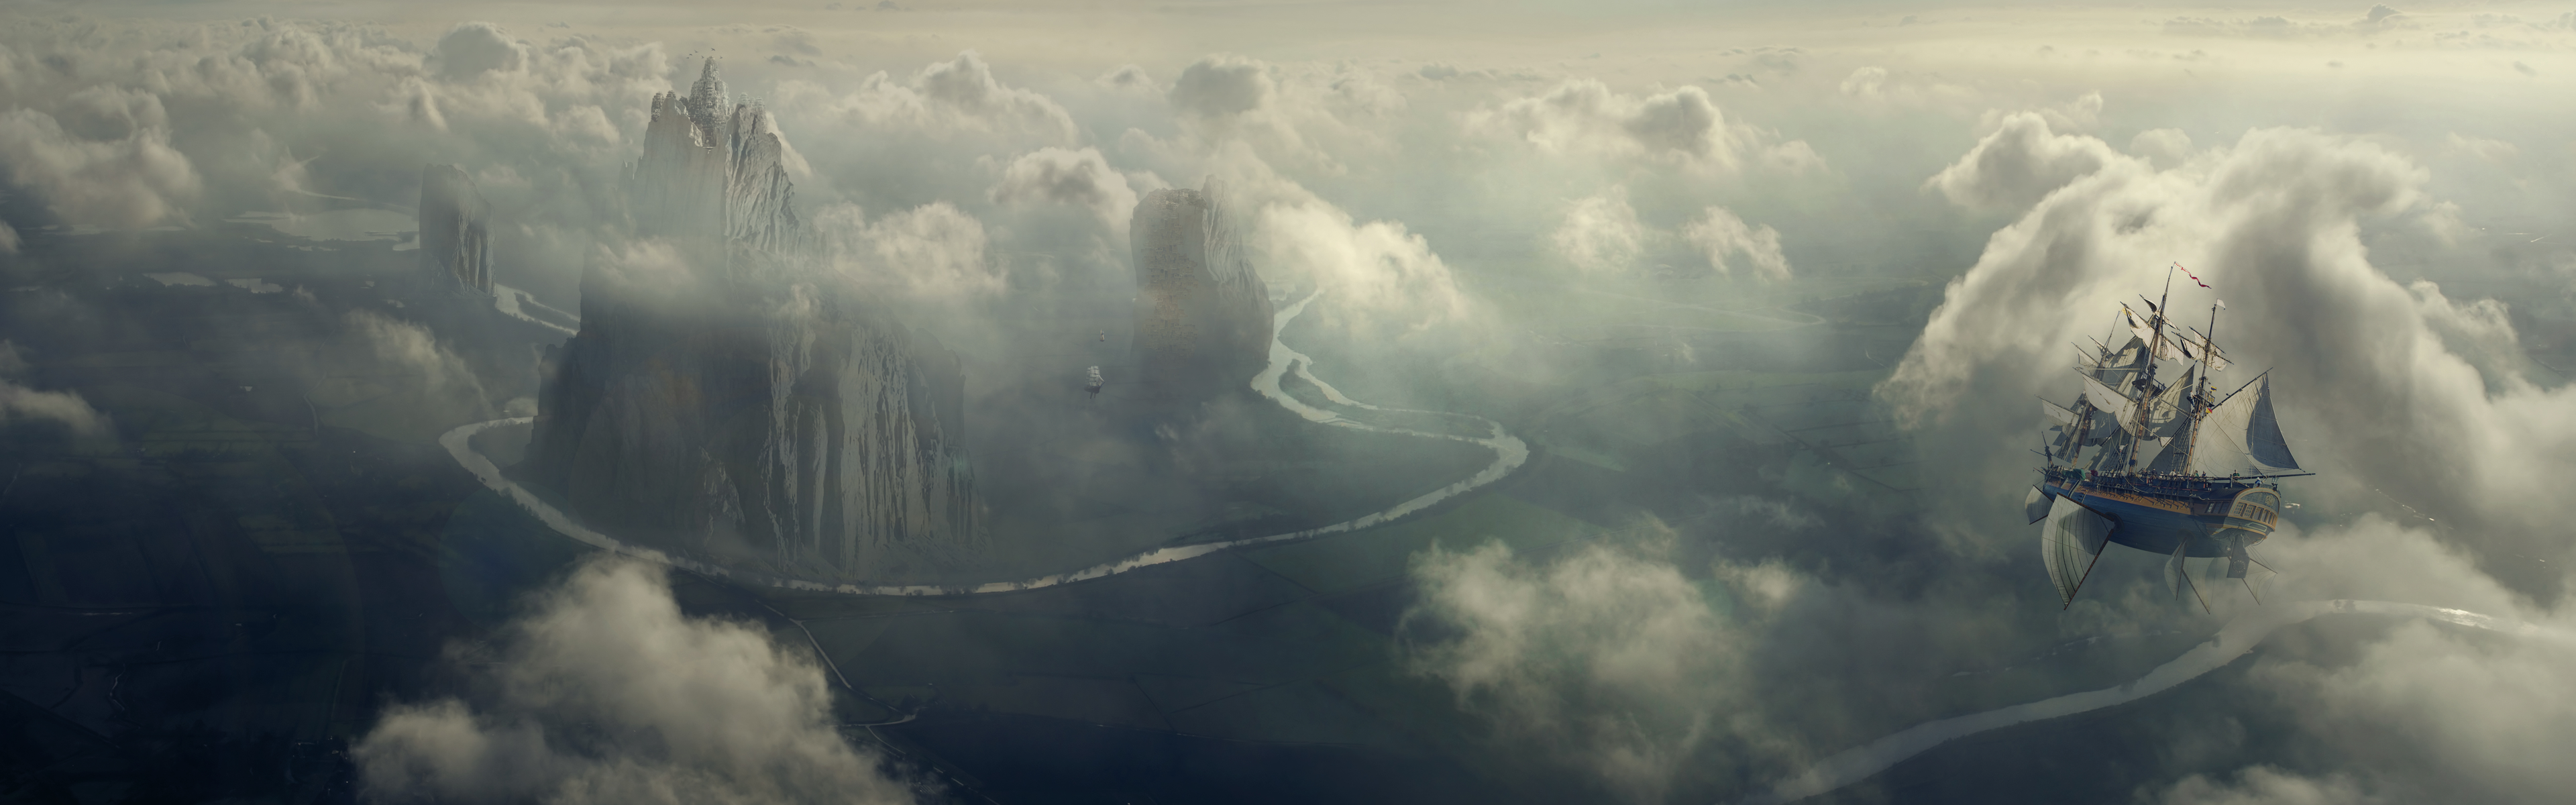 clouds, landscapes, flying, ships, artwork, Desktopography, rivers - desktop wallpaper